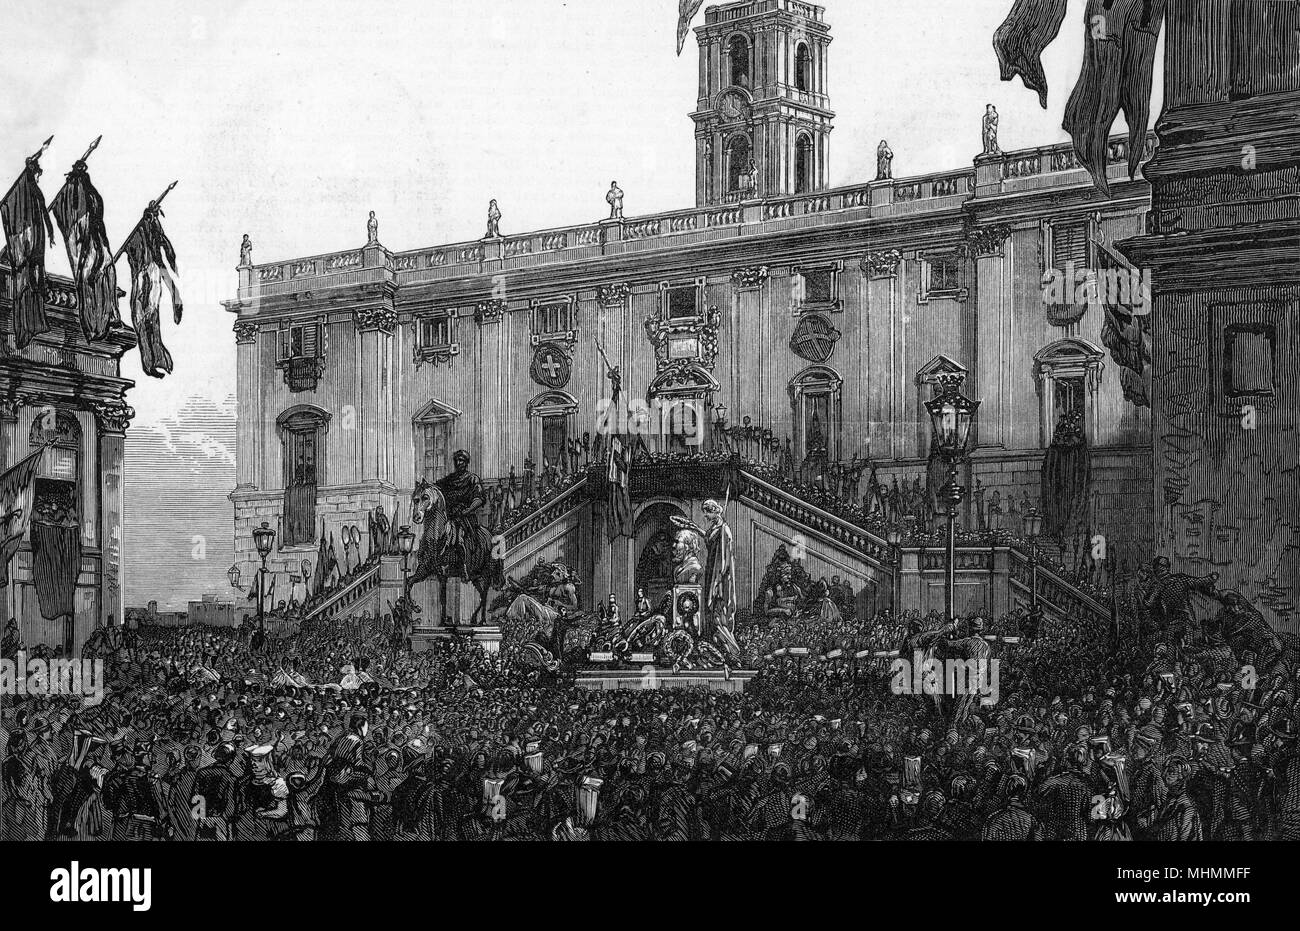 Lorsque Garibaldi meurt, son buste est pris au Capitole à Rome, applaudi par le peuple romain qui lui doivent leur nationalité italienne et leur liberté. Date : 1882 Banque D'Images